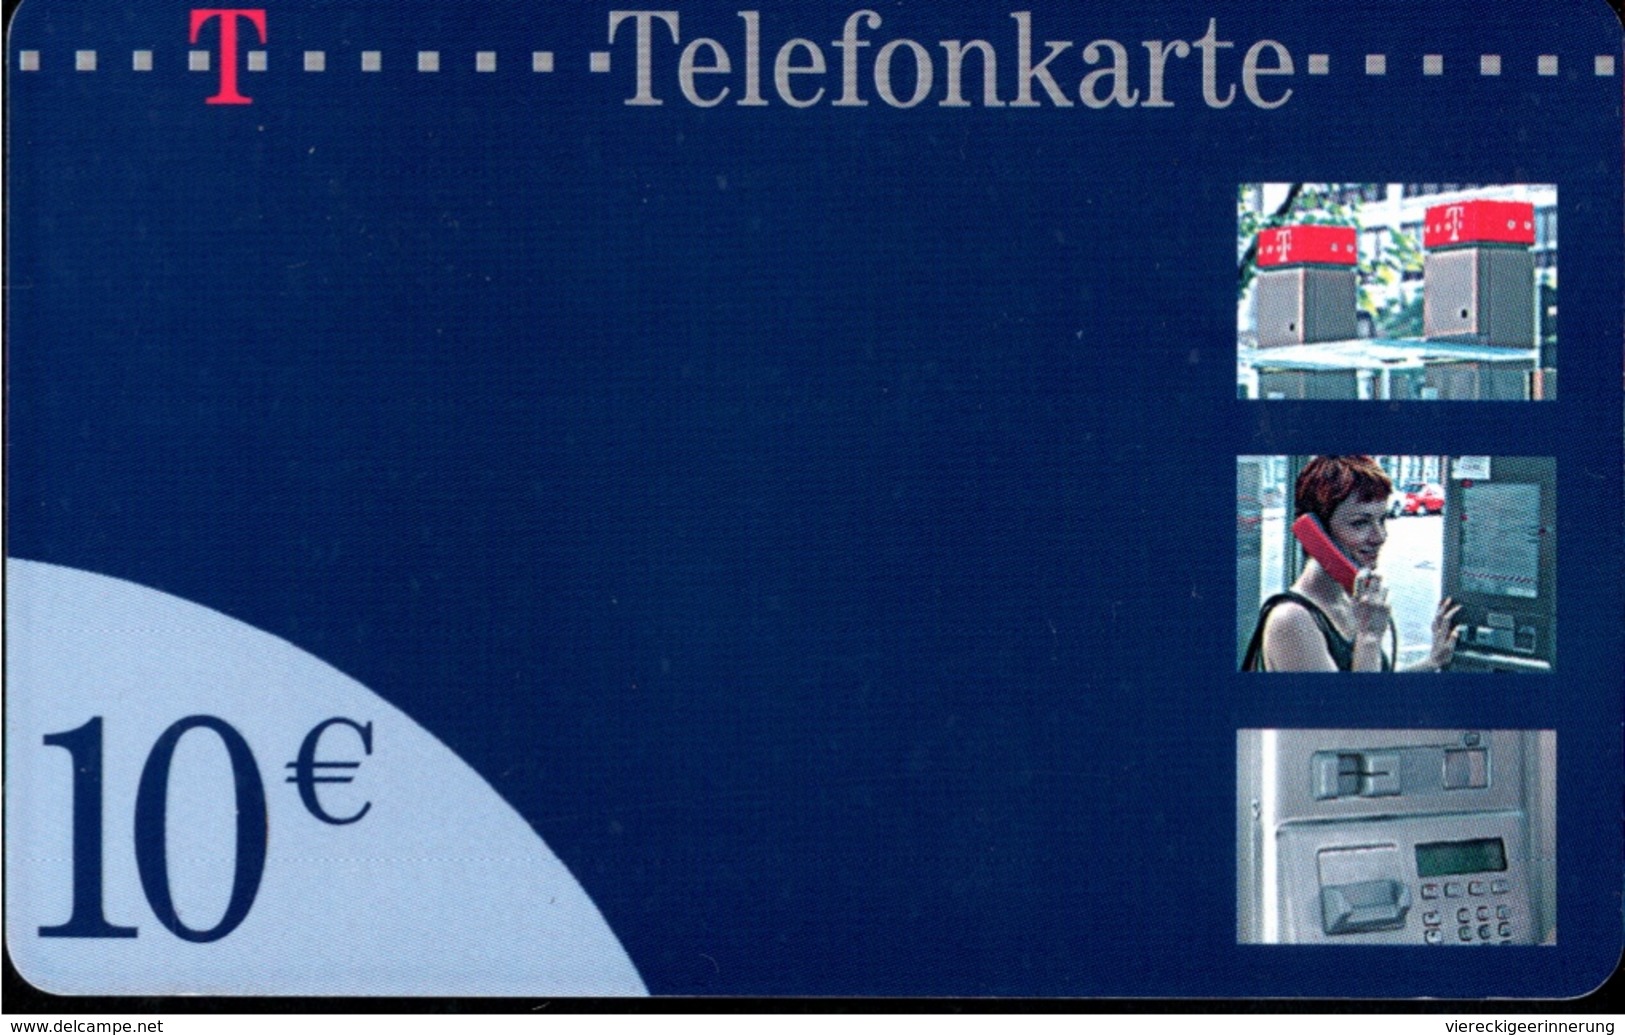 ! 10 € Telefonkarte, Telecarte, Phonecard, 2004, PD02, Germany - P & PD-Reeksen : Loket Van D. Telekom